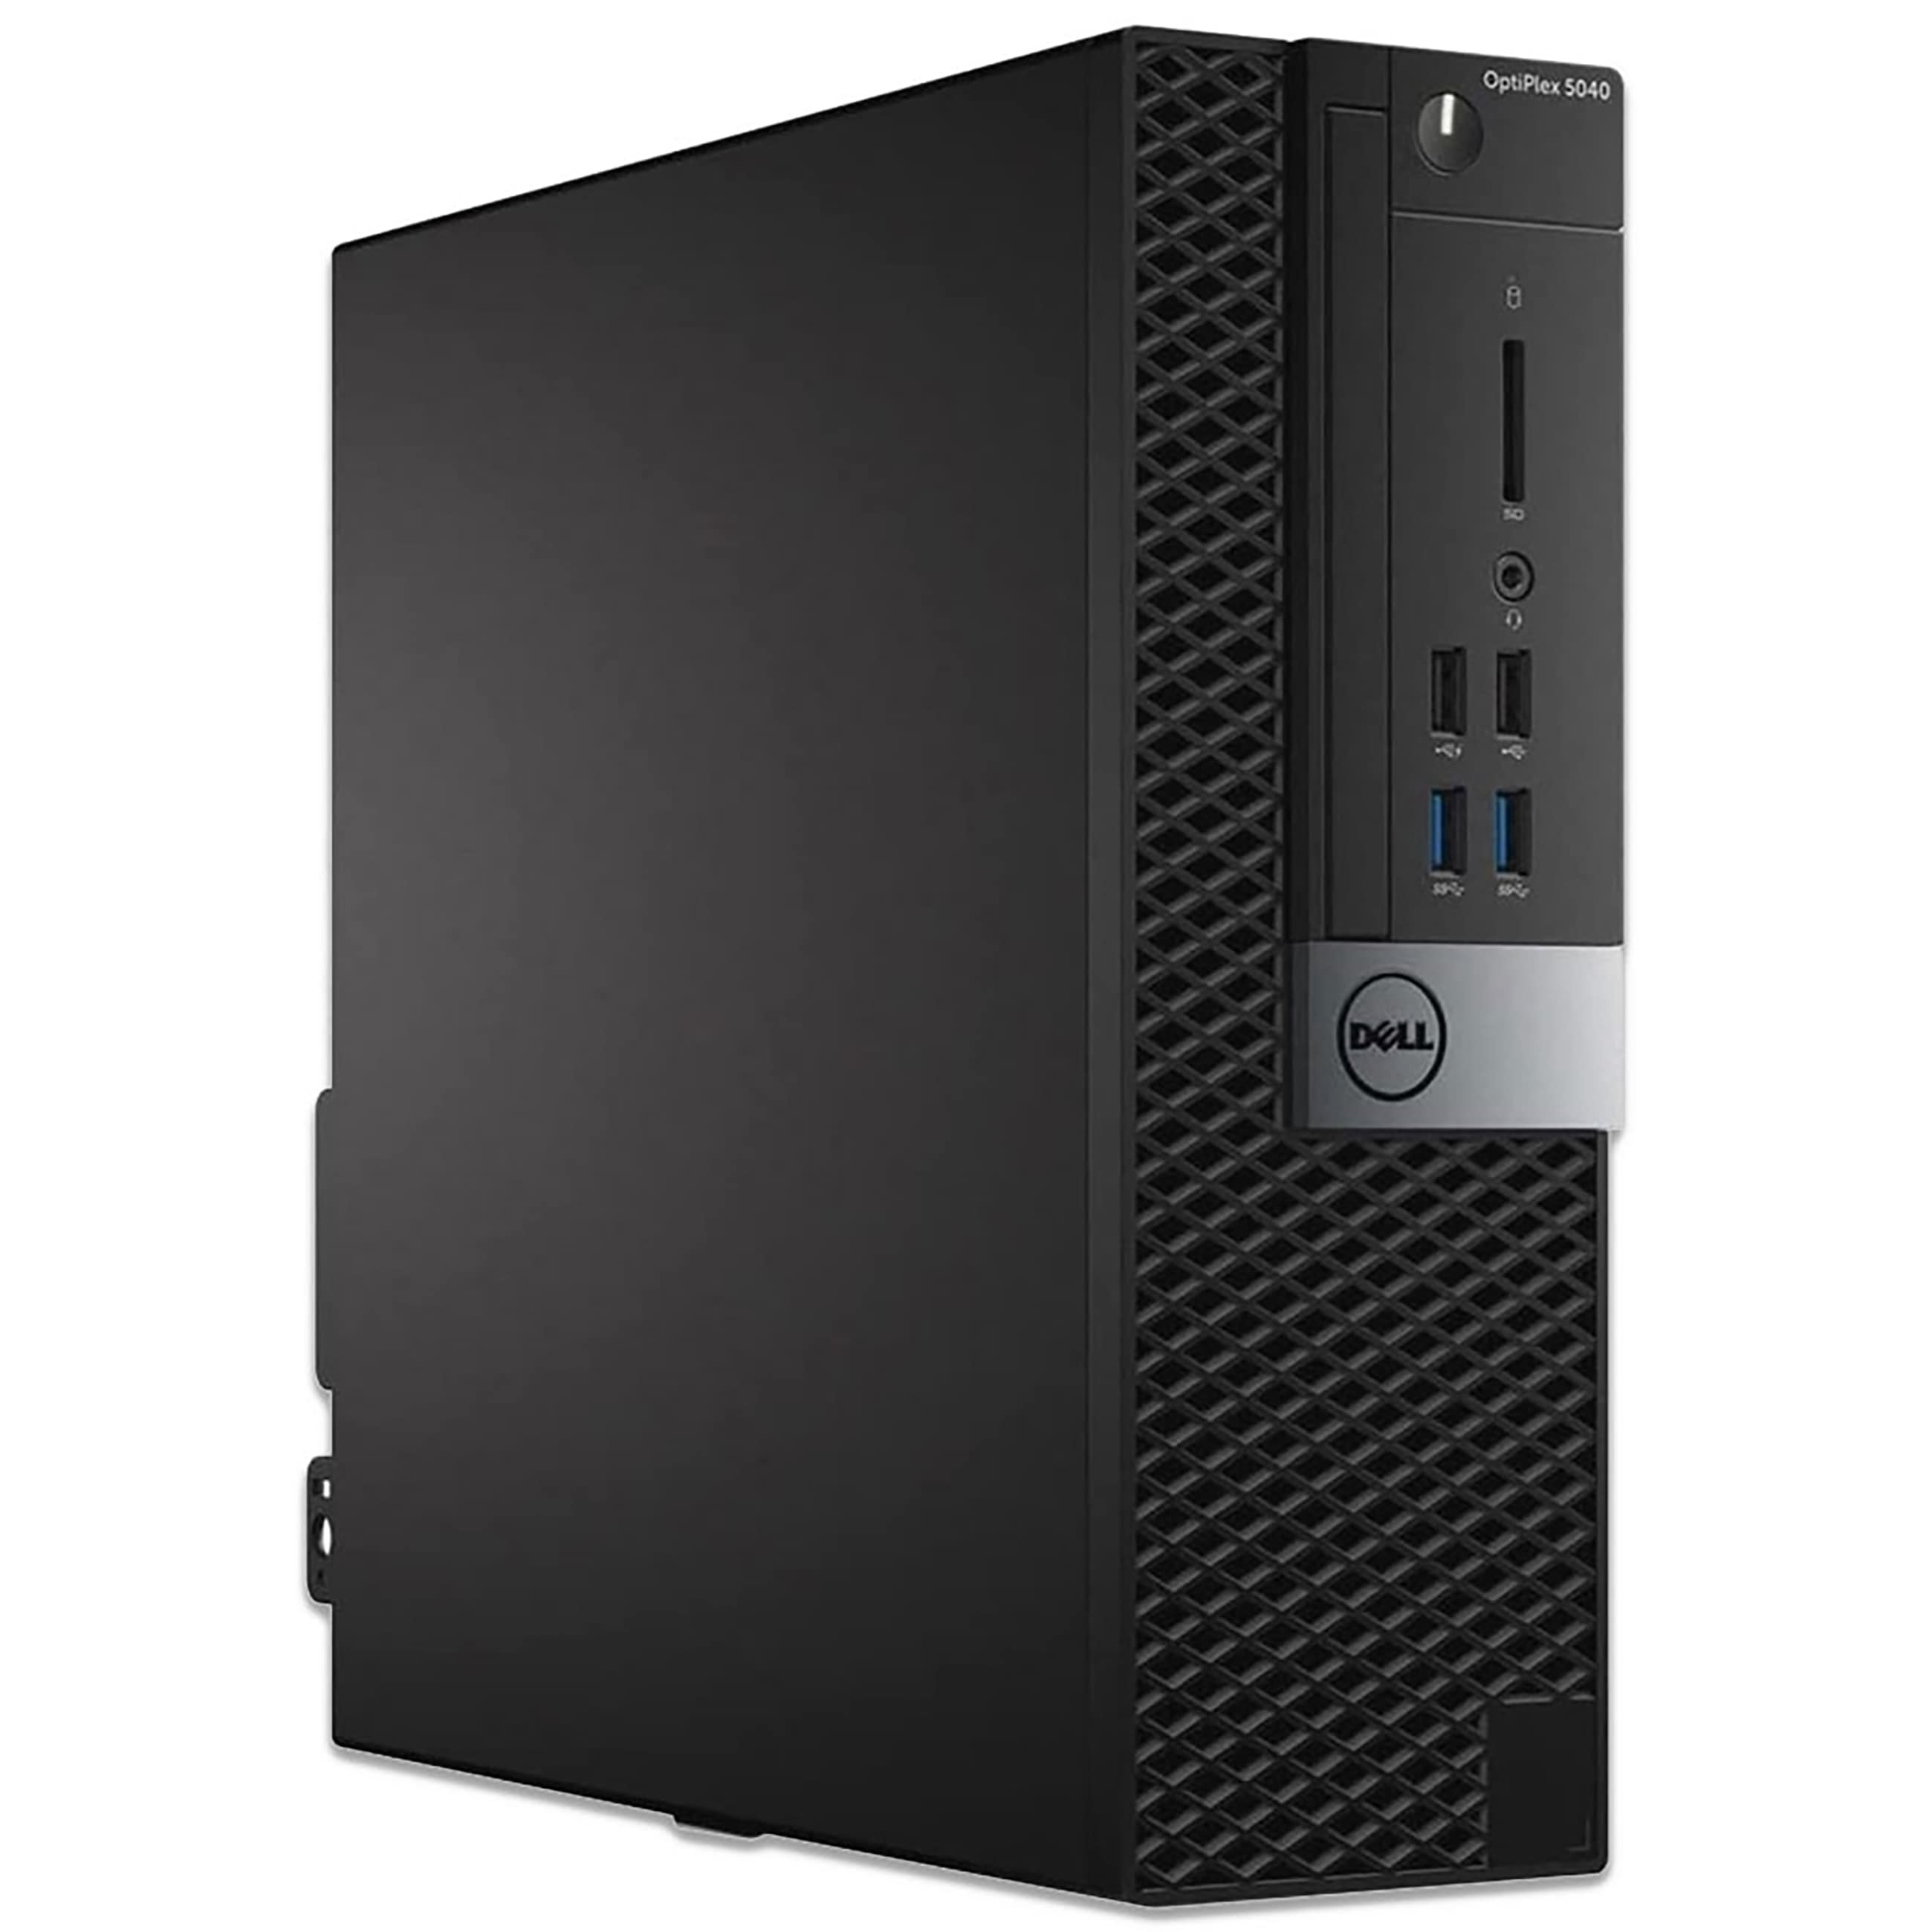 Dell OptiPlex 5040 - Desktop - Intel Core i3 6100 @ 3,7 GHz - 8 GB DDR3 - 250 GB SSD - Windows 10 Professional